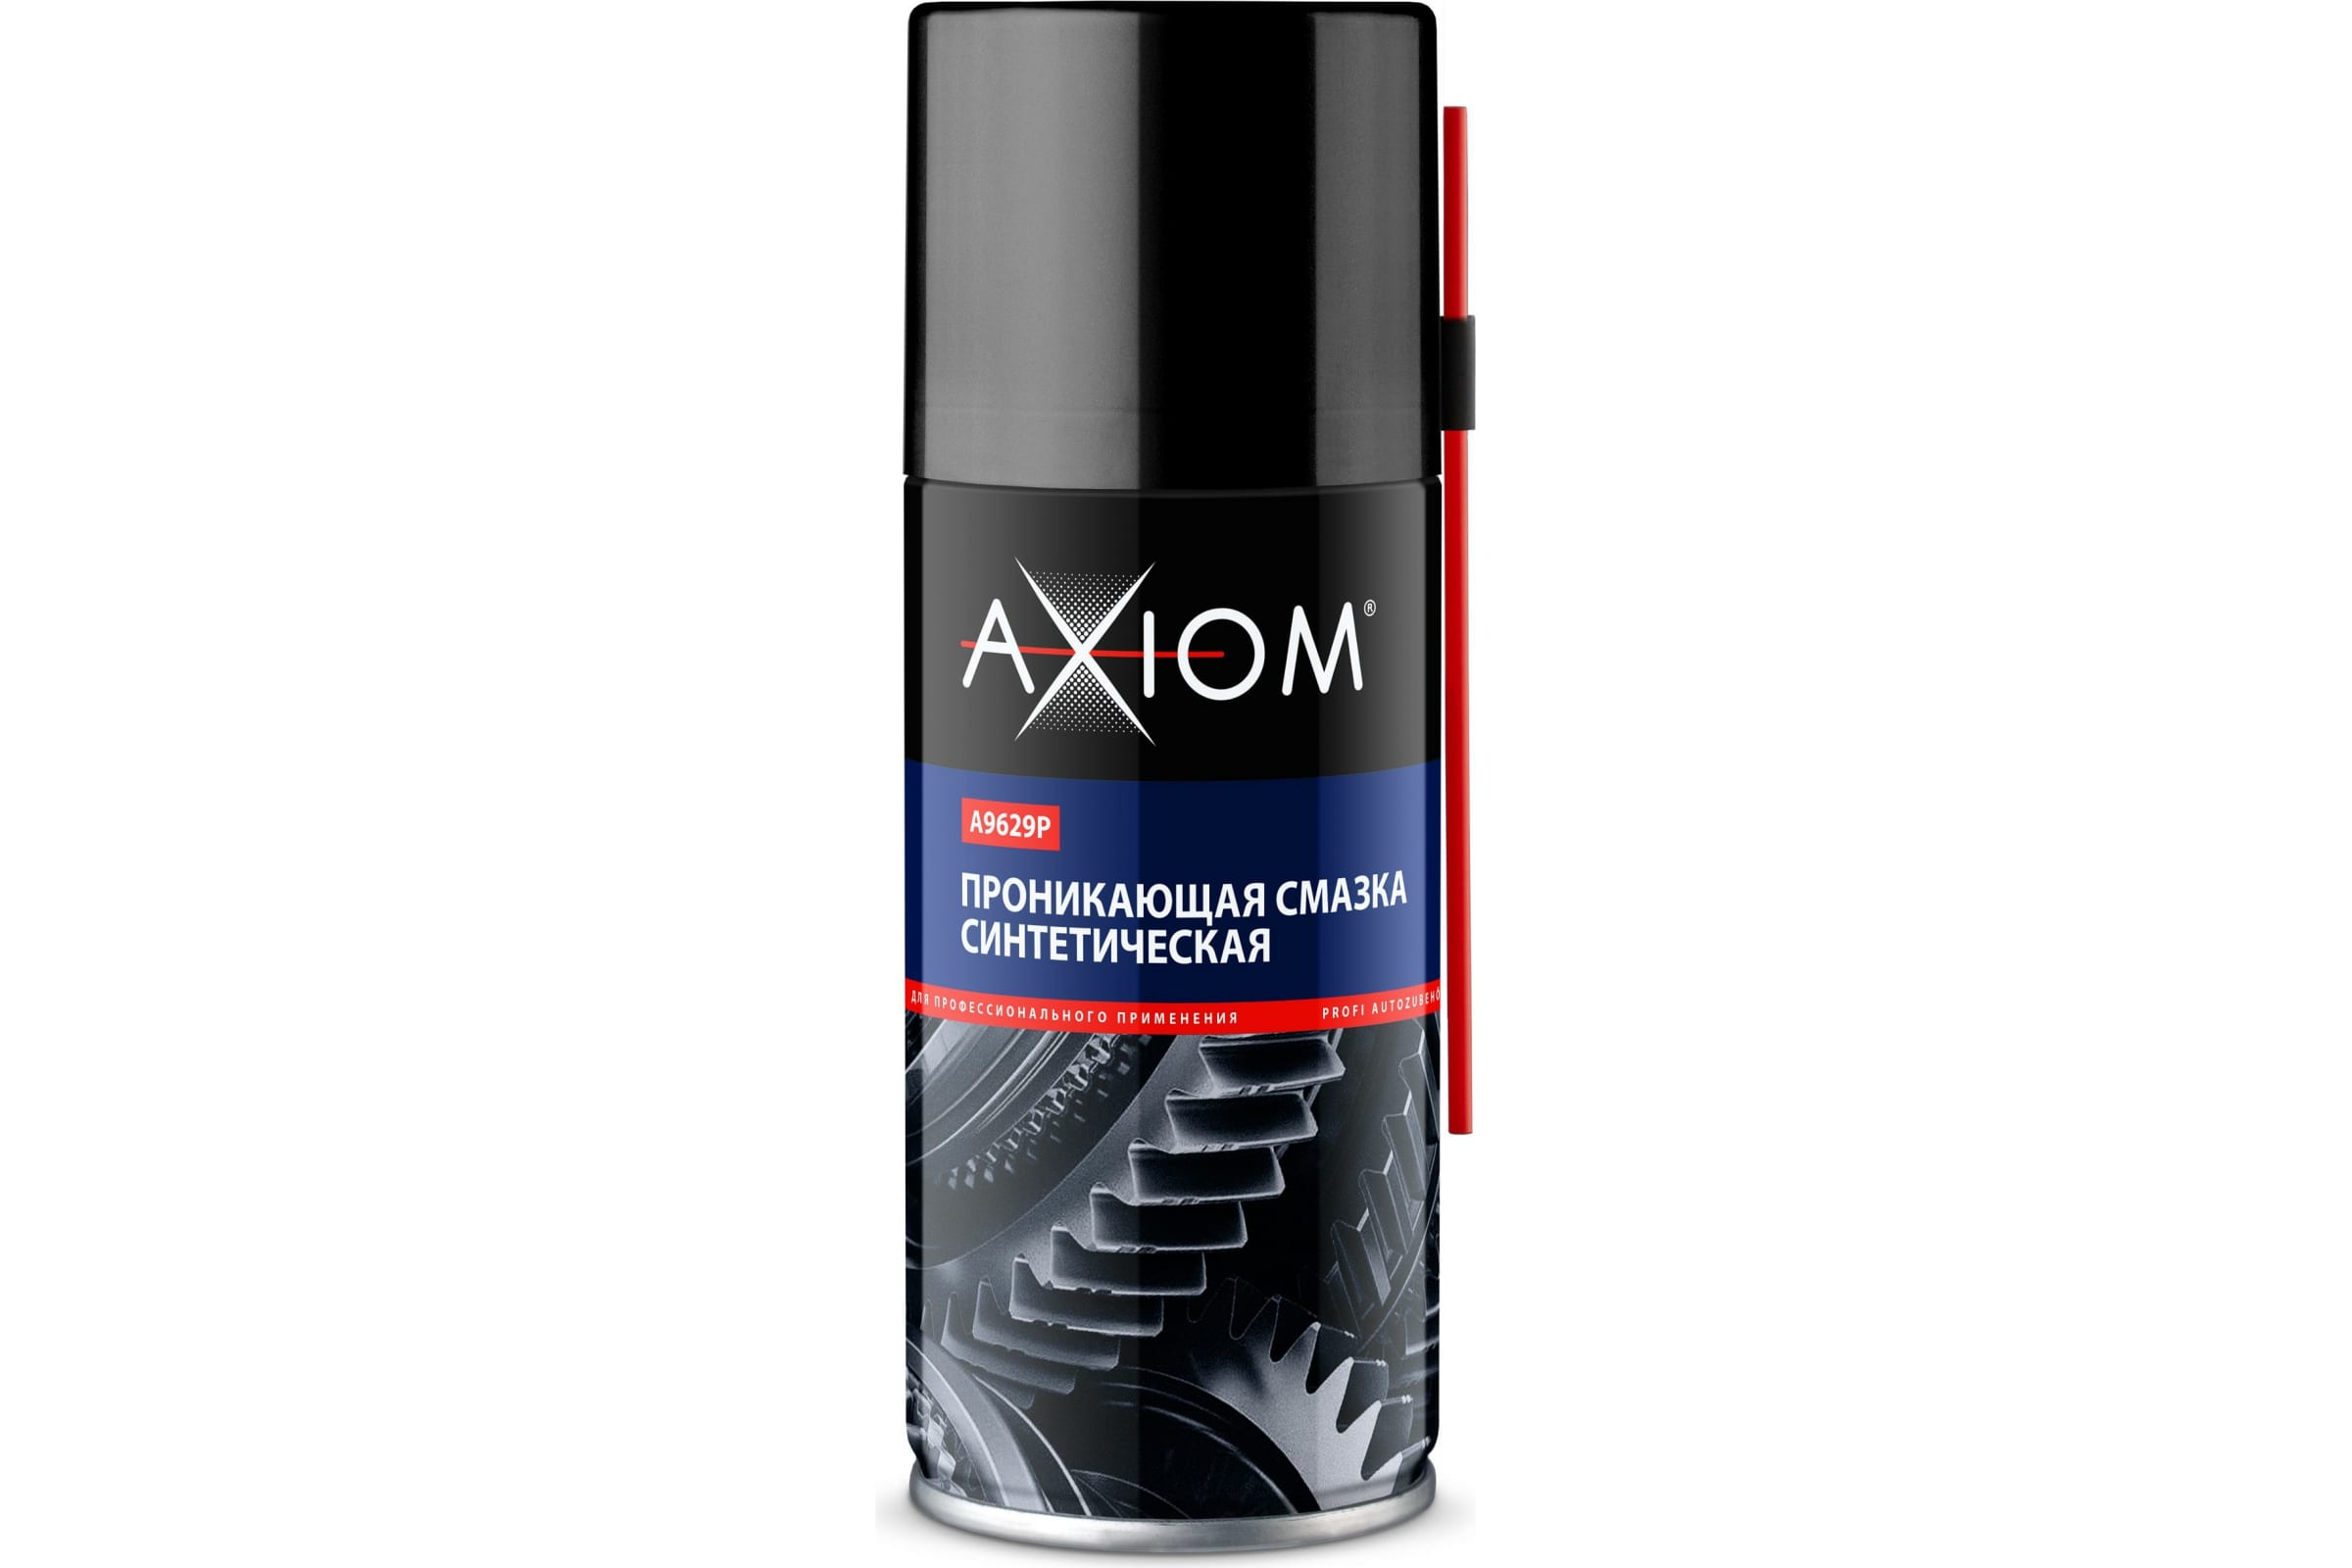 AXIOM Синтетическая проникающая смазка 210 мл. a9629p синтетическая проникающая смазка axiom